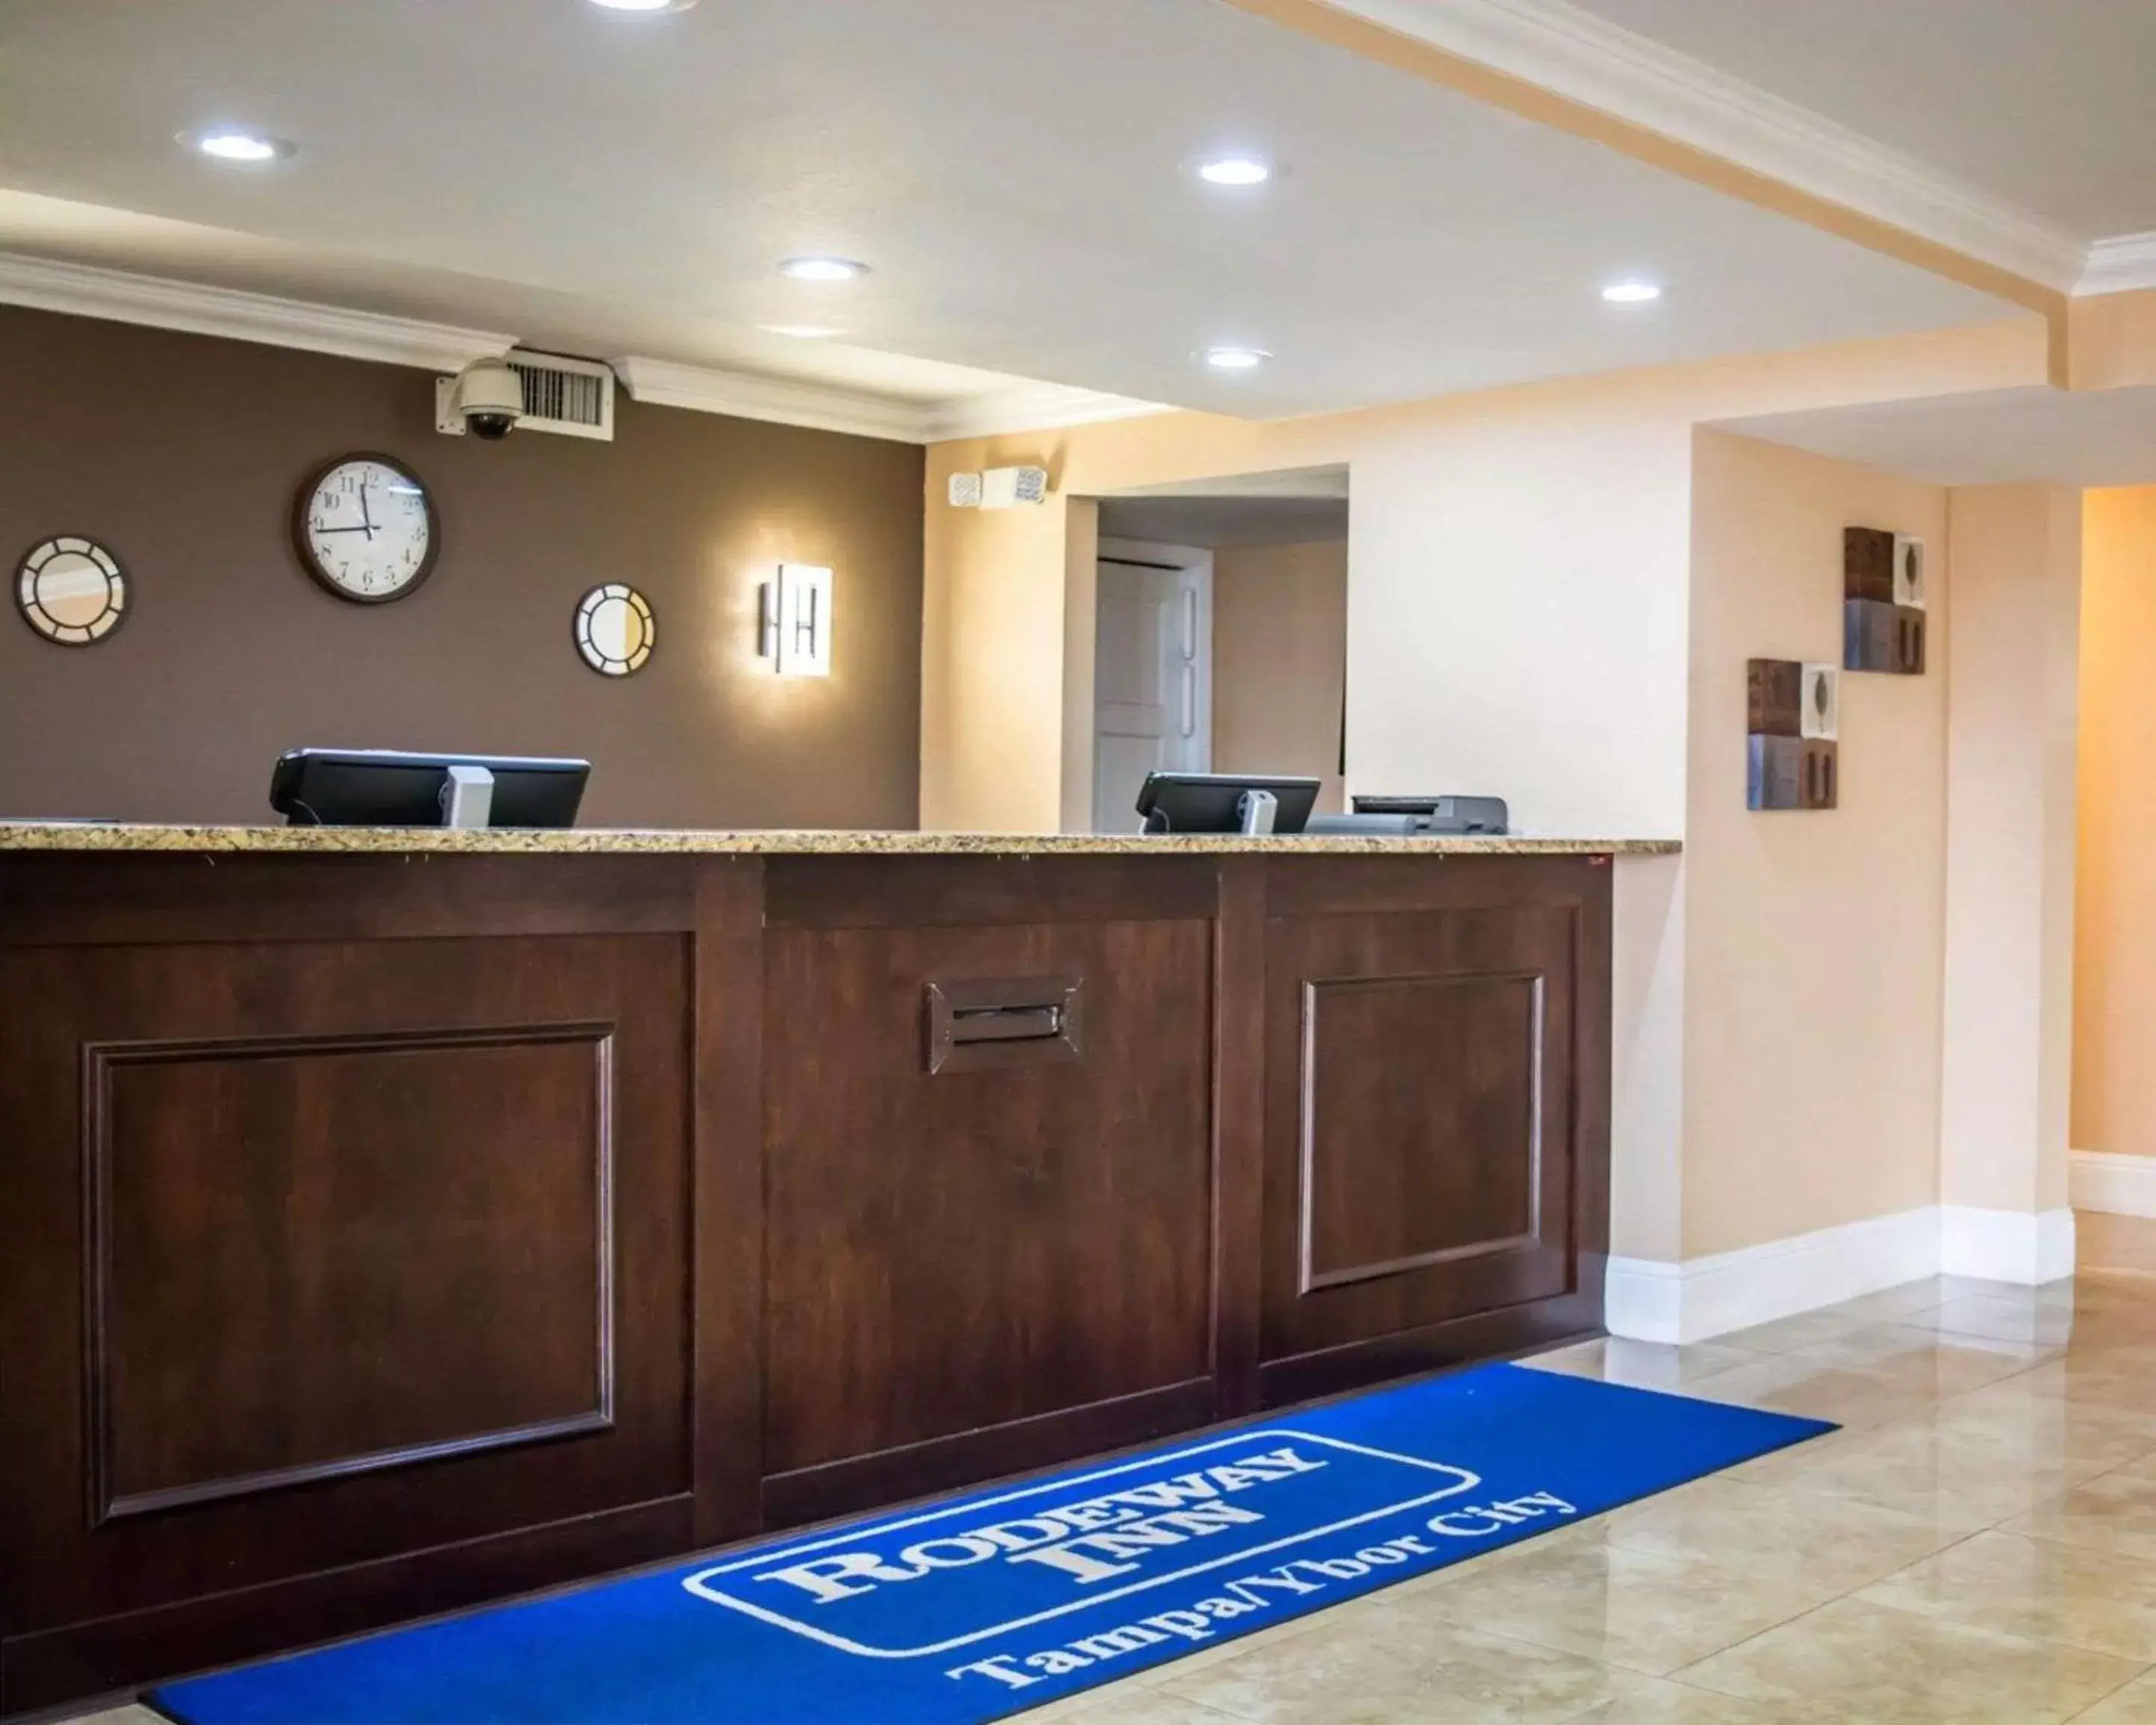 Lobby or reception, Lobby/Reception in Rodeway Inn Near Ybor City - Casino